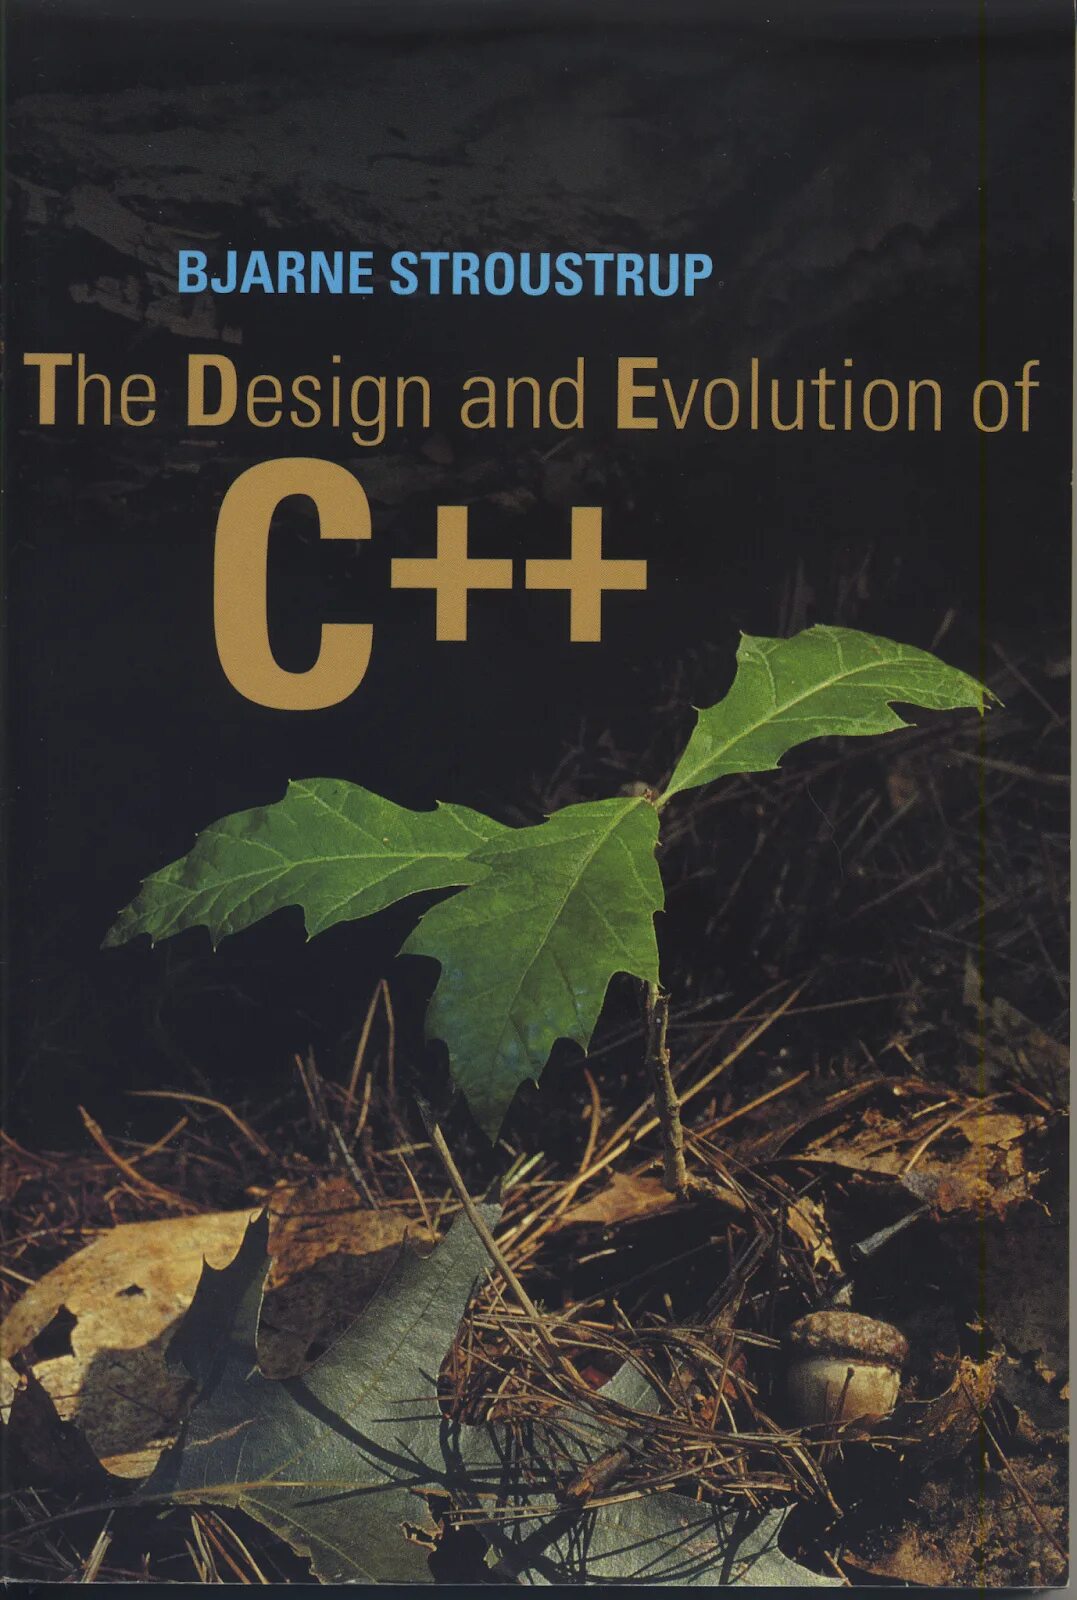 C++ Страуструп книга. Язык программирования c++ бьёрн Страуструп книга. Дизайн и Эволюция c++ бьёрн Страуструп. Дизайн и Эволюция c++.